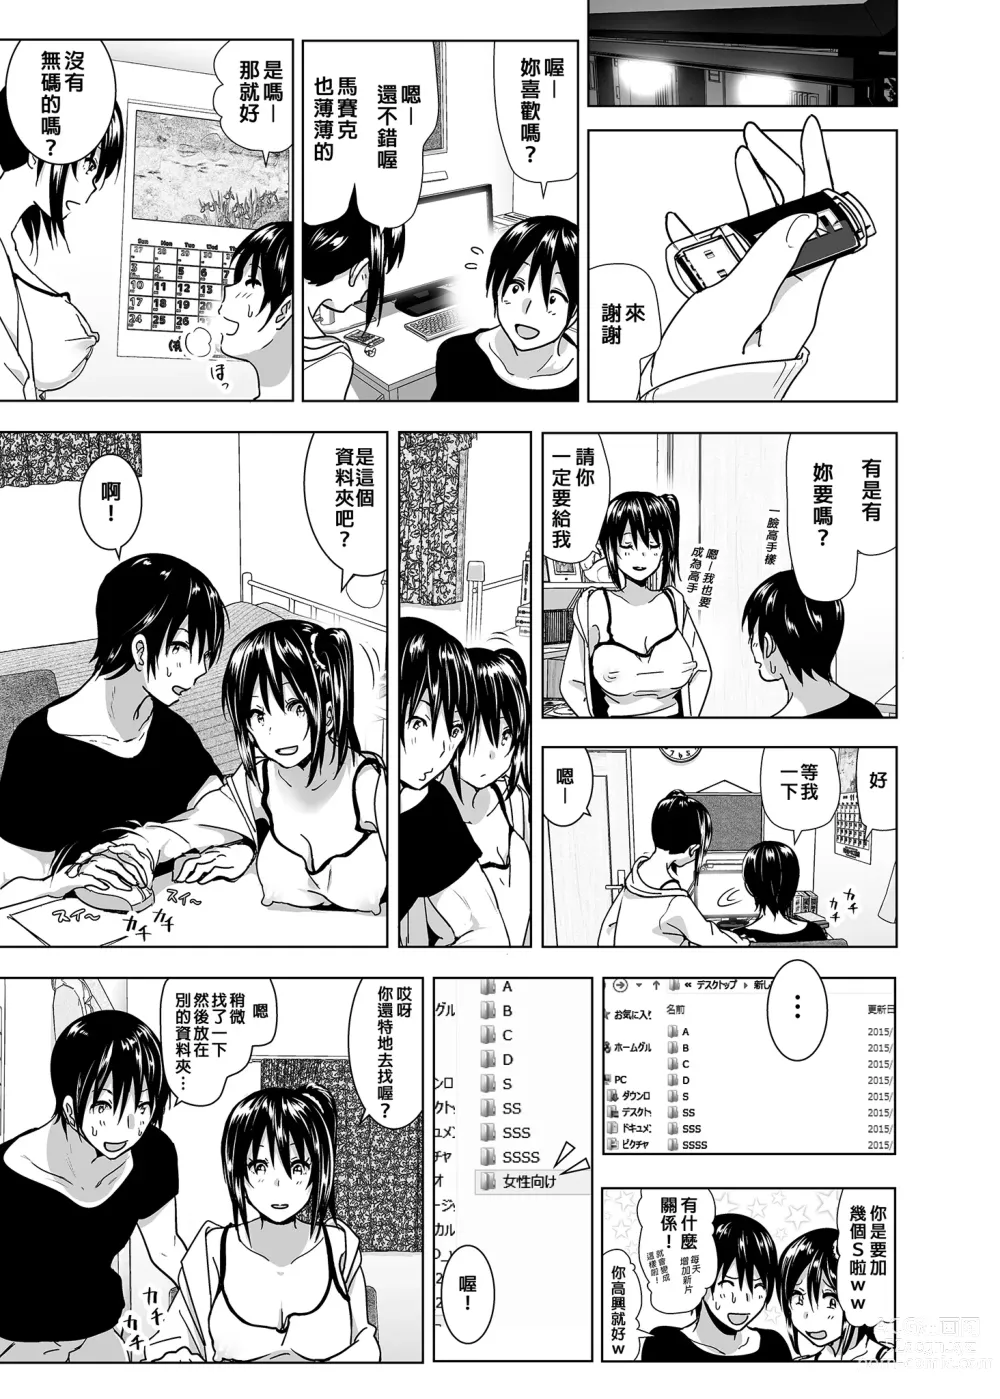 Page 7 of doujinshi 關於妹妹胸部整顆露出來的那件事 總集篇2 (decensored)